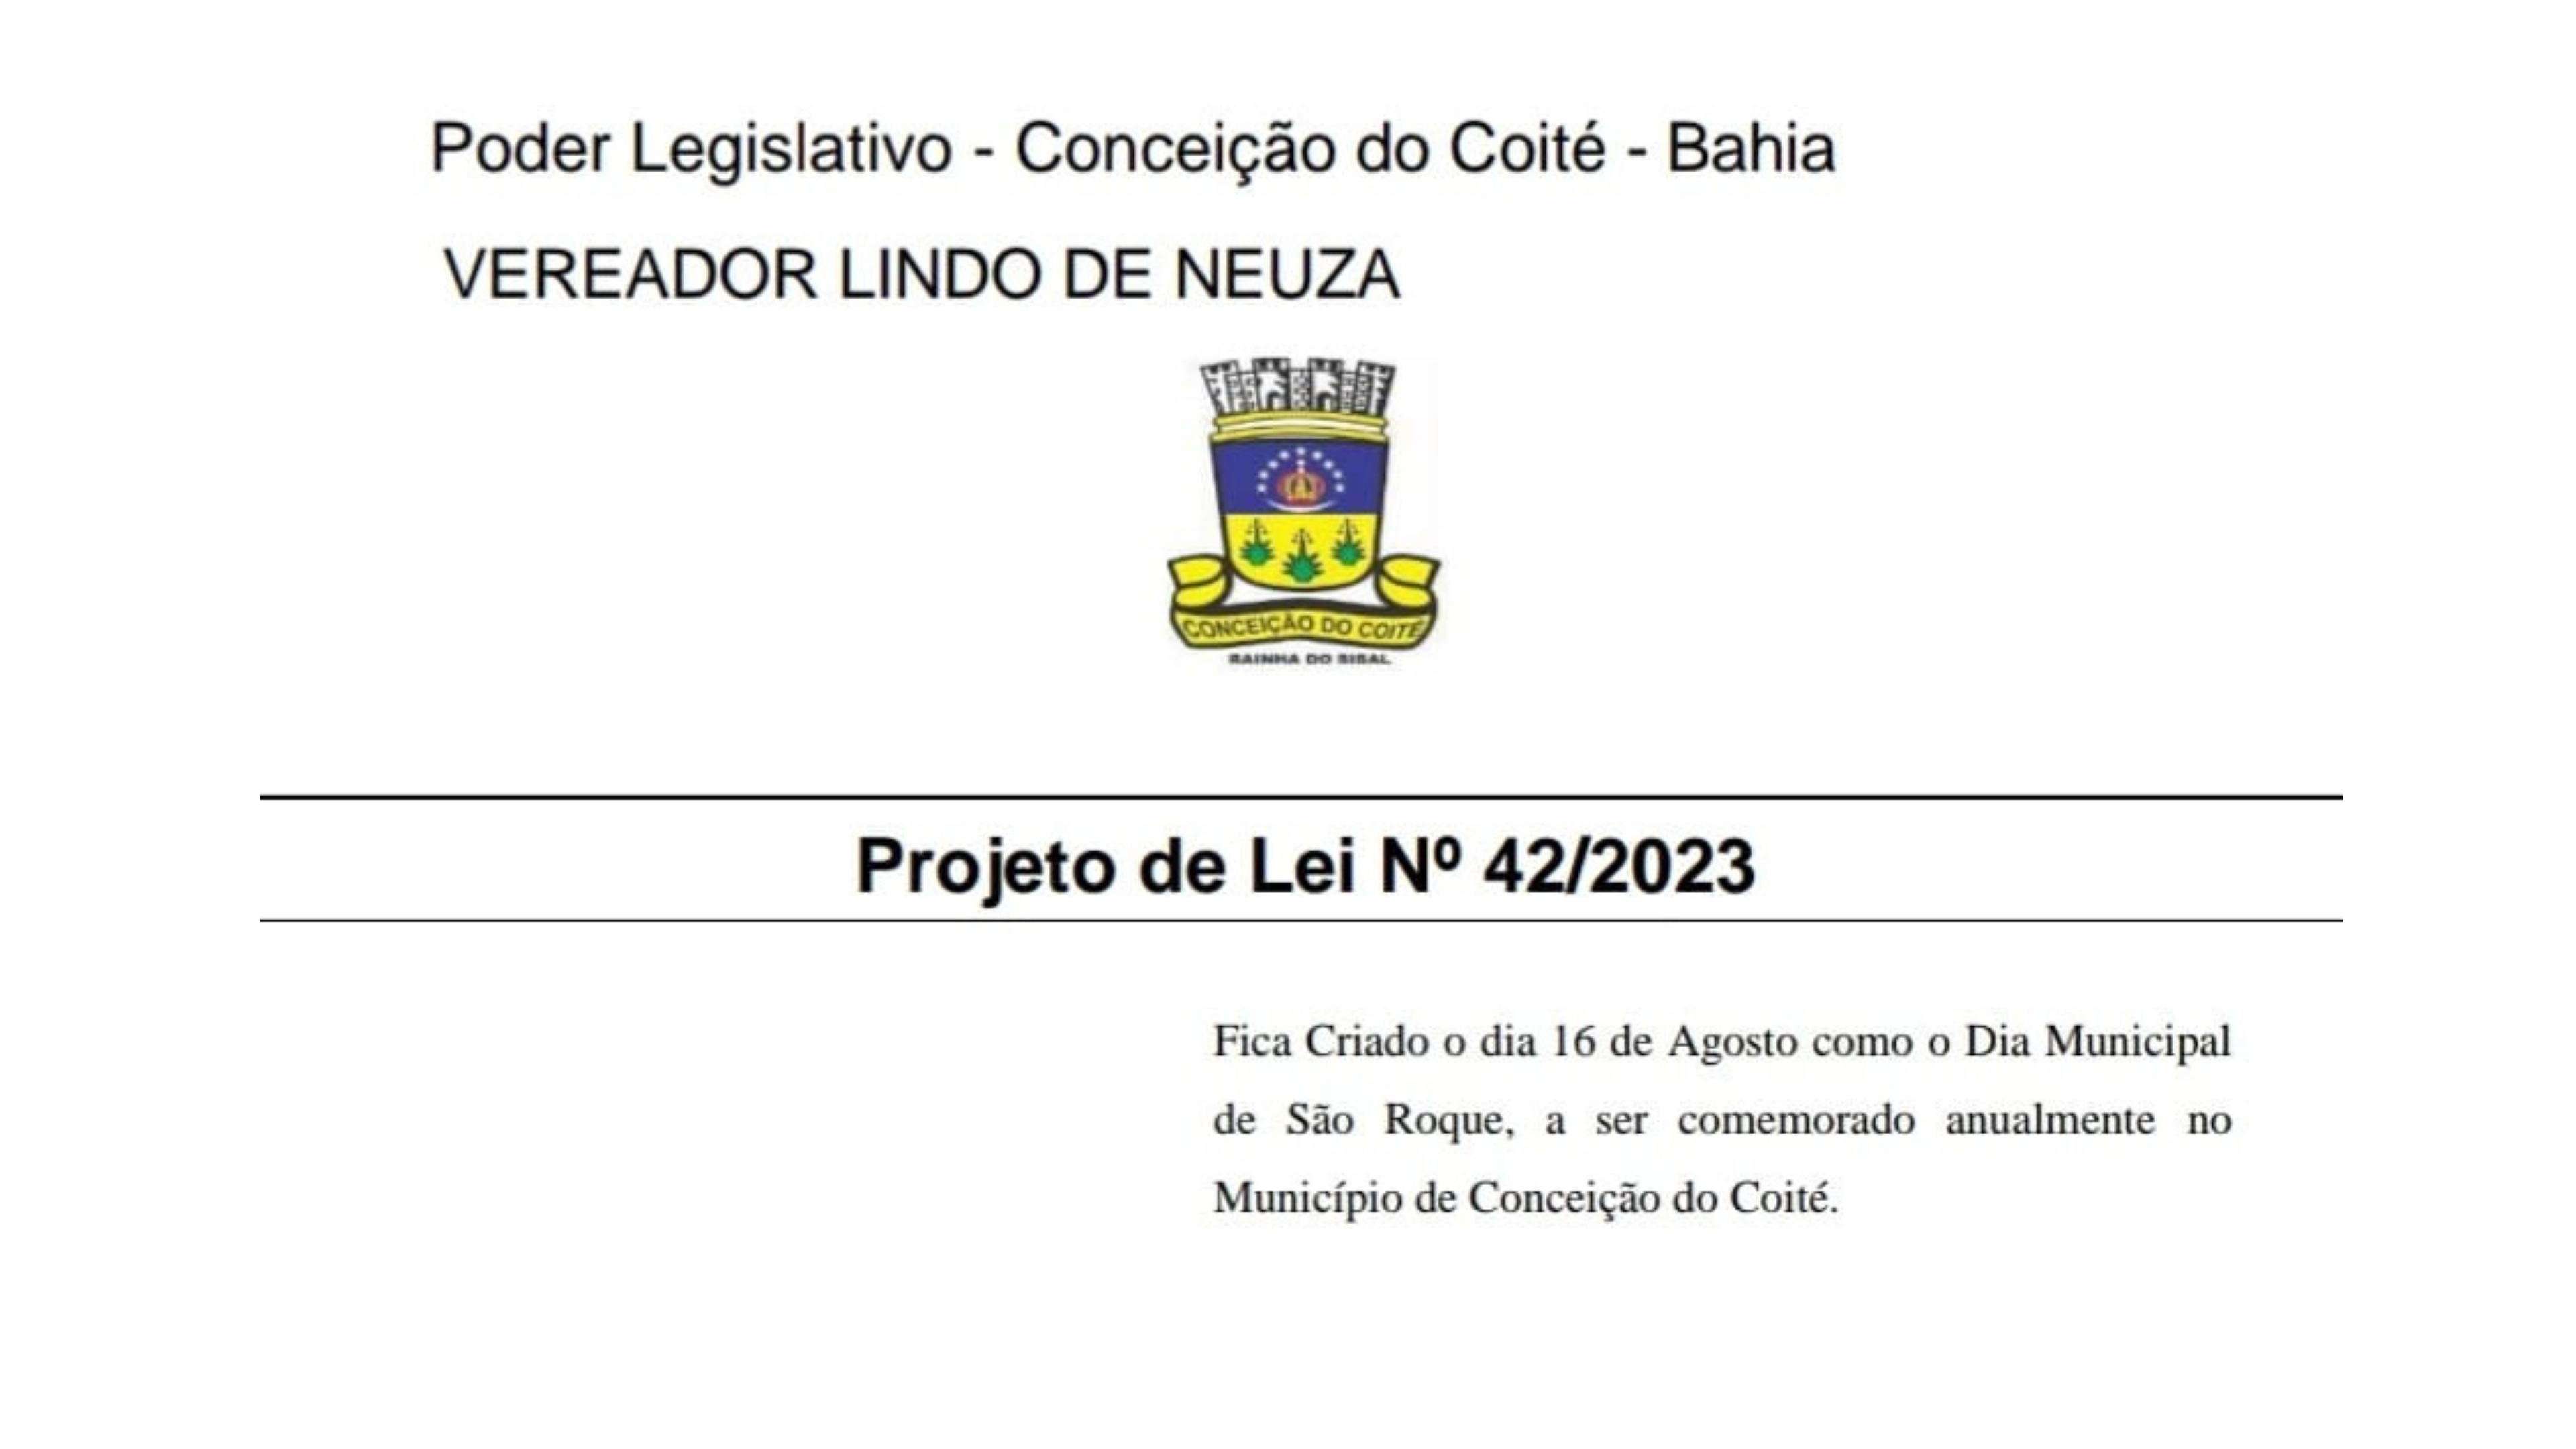  Projeto de Lei 42/2023 institui o dia 16 de agosto como feriado municipal de São Roque